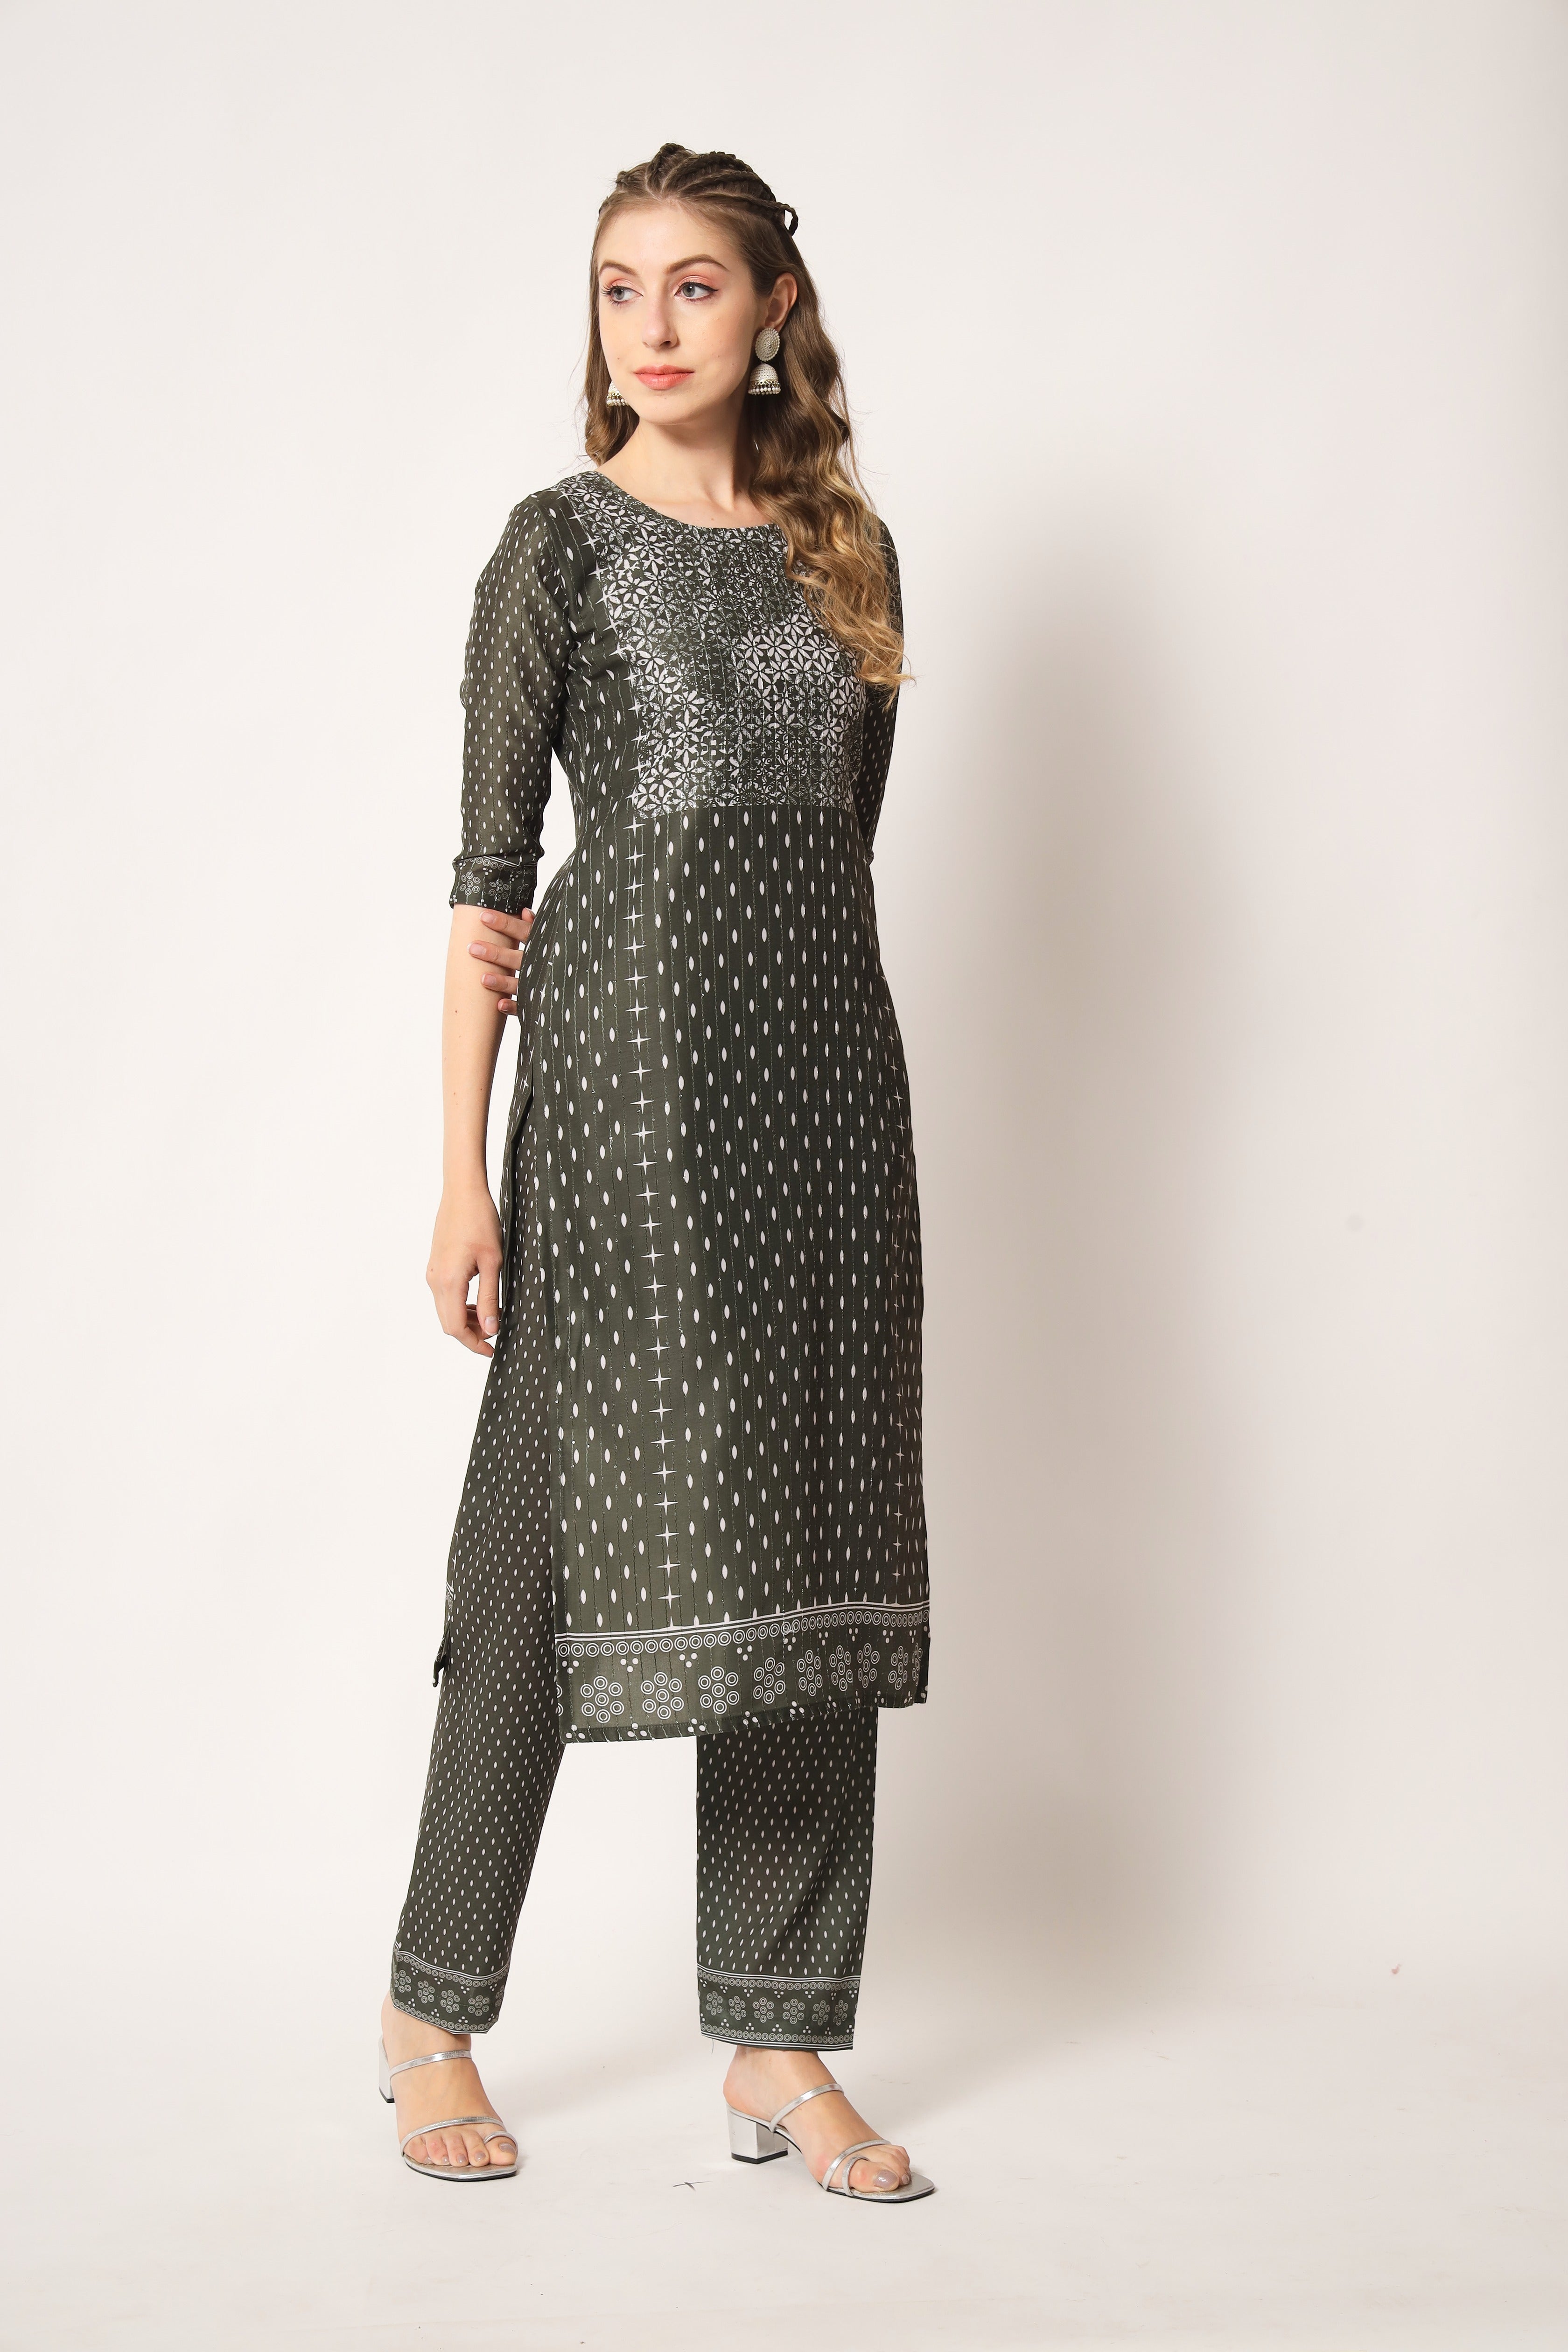 Embroidered Muslin Olive Green Trendy Salwar Kameez For Women